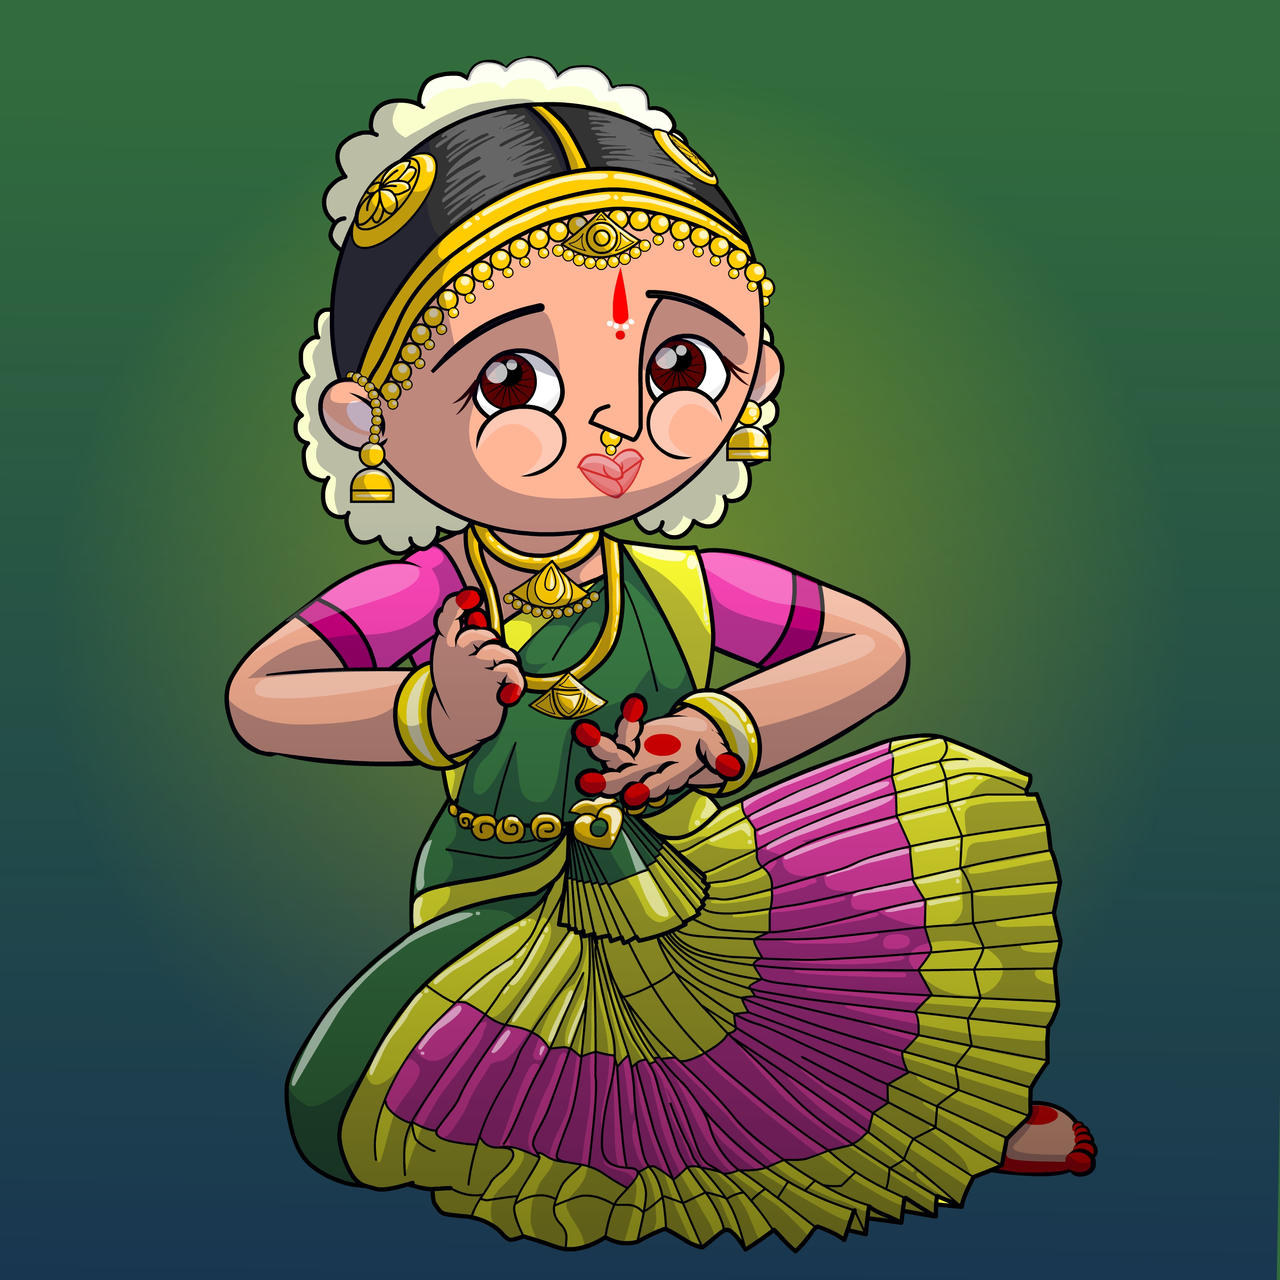 bharatnatyam dancer by chinuMeenu on DeviantArt